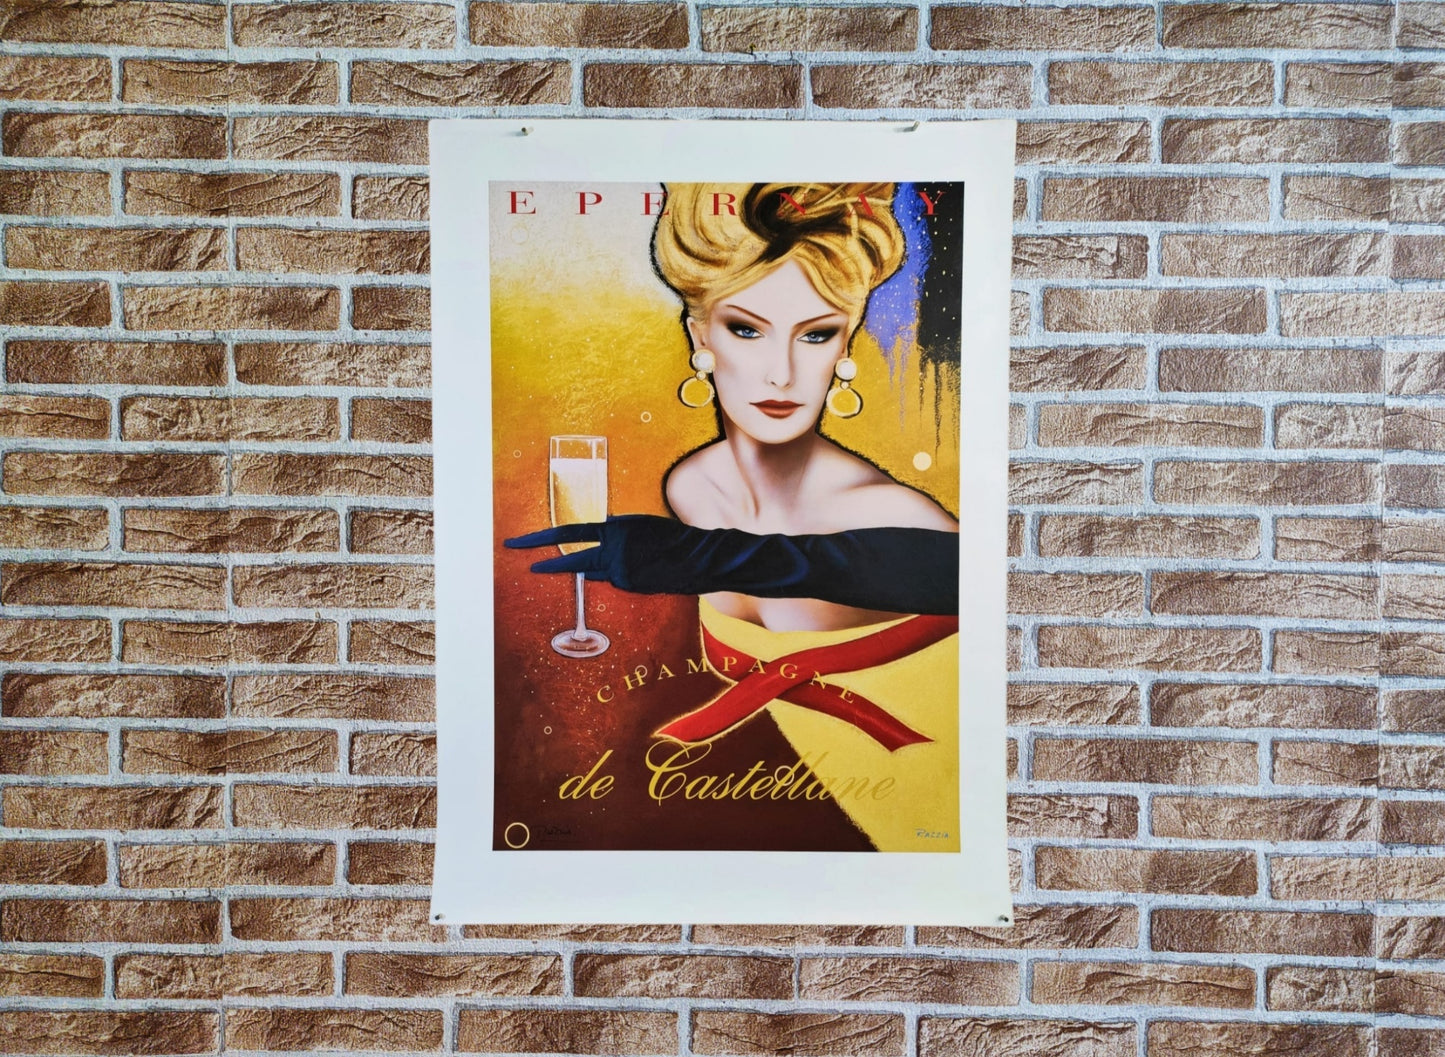 Razzia | Manifesto pubblicitario - Epernay de Castellane Champagne vino